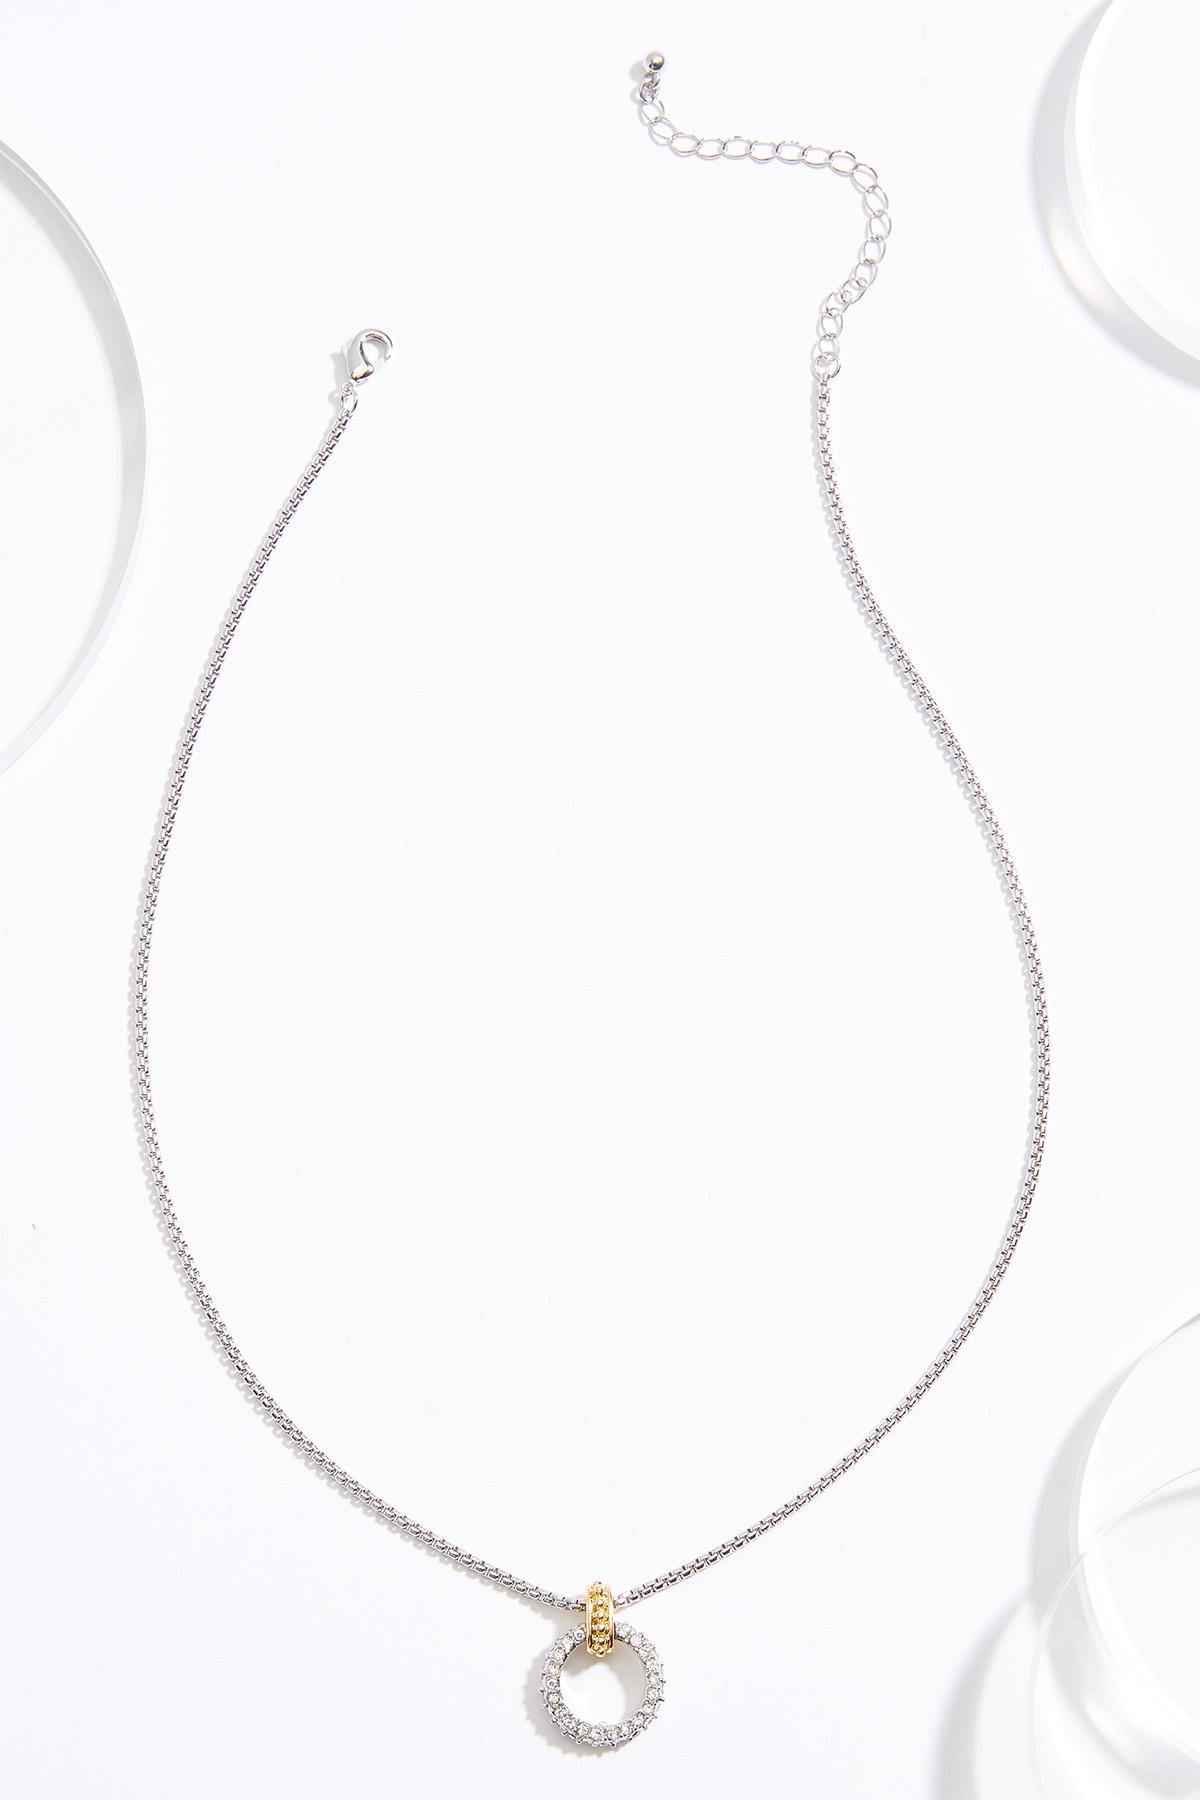 Leonardoda Luminance rim 18k Gold Ring Pendant Necklace Necklaces Cato Fashions